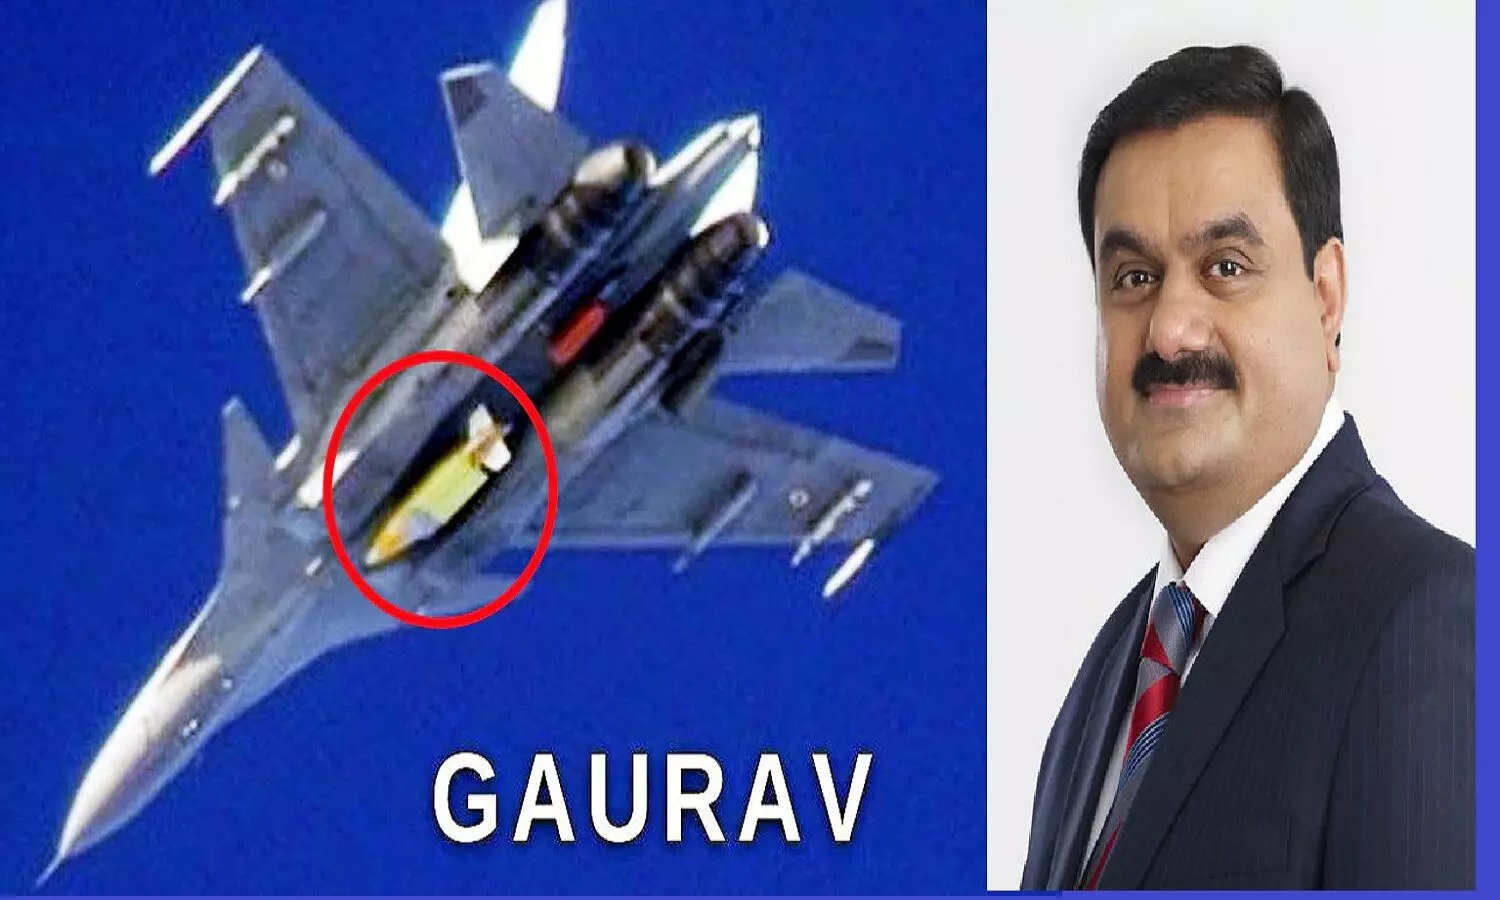 Gaurav Bomb: गौतम अडानी की कंपनी ने बनाया गौरव बॉम्ब, जो हवा में तैरते हुए दुश्मन को जमीन में गिरा देता है